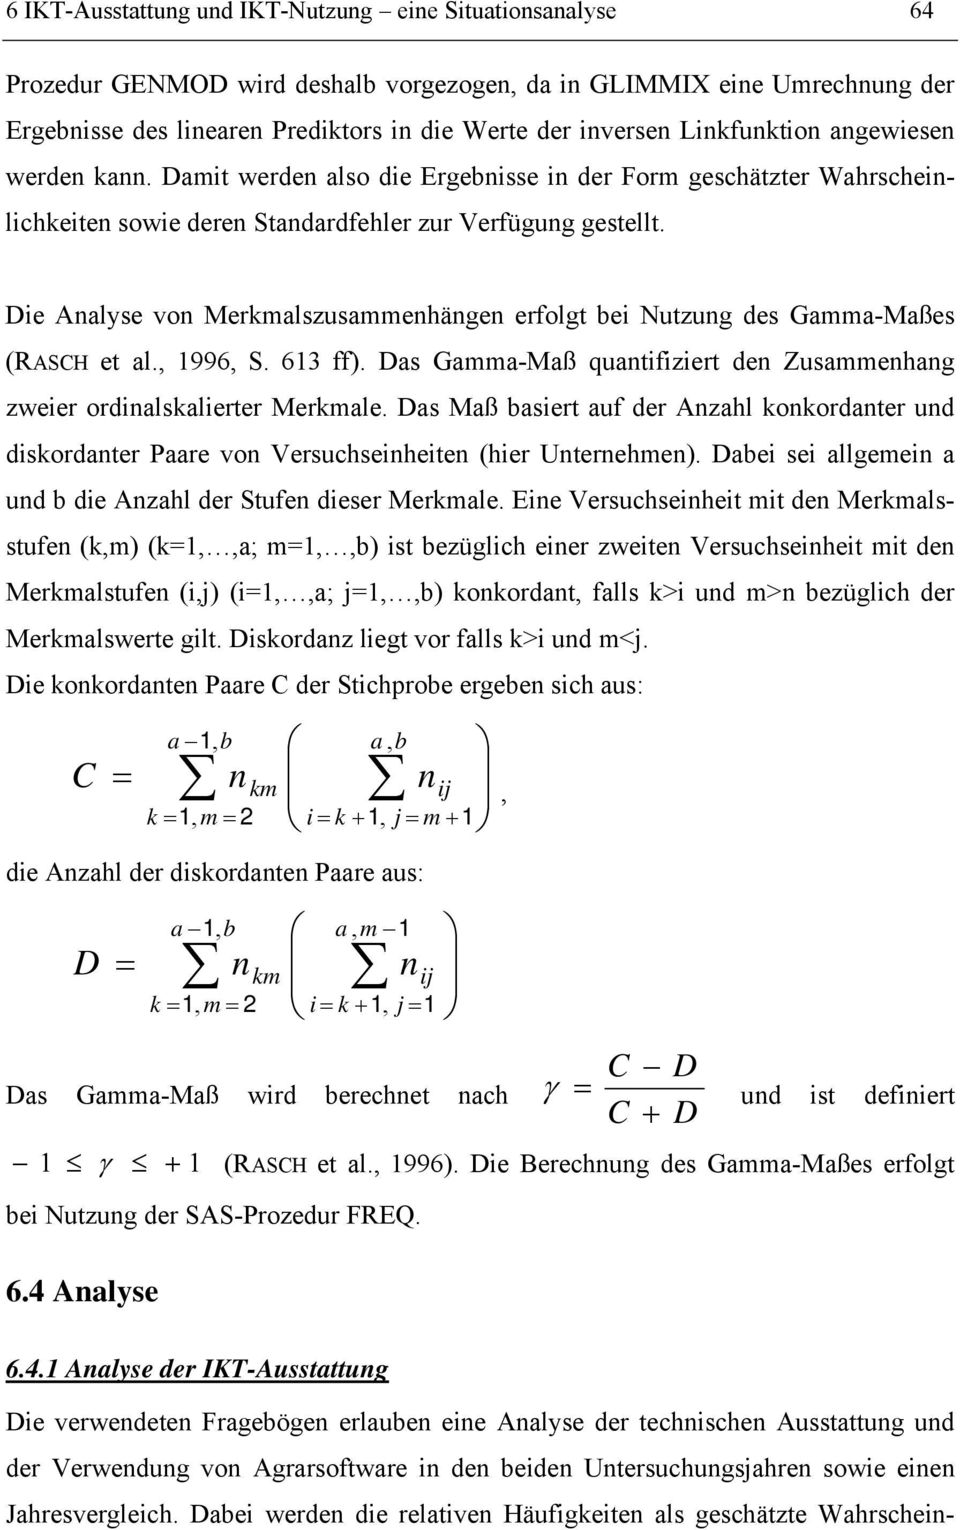 Die Analyse von Merkmalszusammenhängen erfolgt bei Nutzung des Gamma-Maßes (RASCH et al., 1996, S. 613 ff). Das Gamma-Maß quantifiziert den Zusammenhang zweier ordinalskalierter Merkmale.